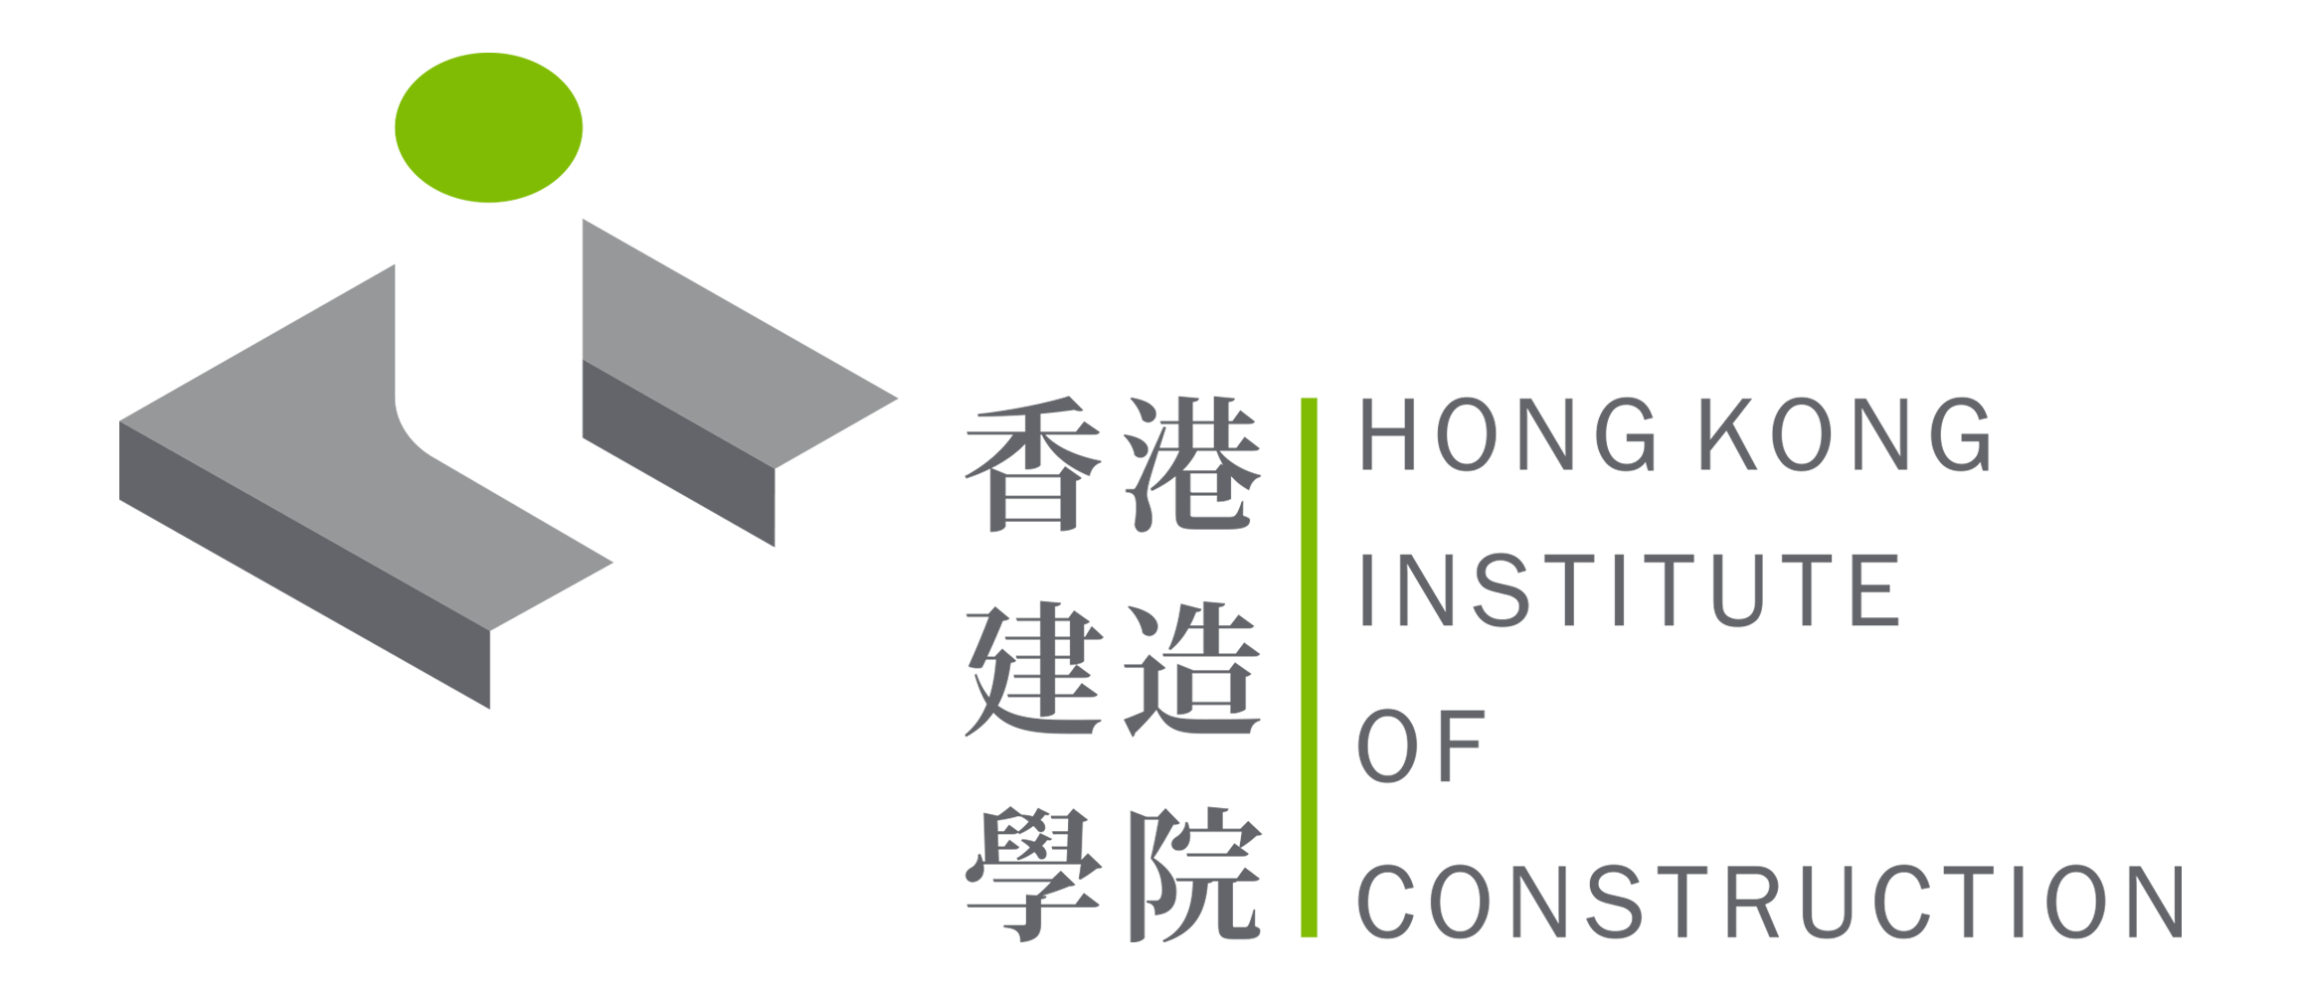 本页图片/档案 - hkic_logo